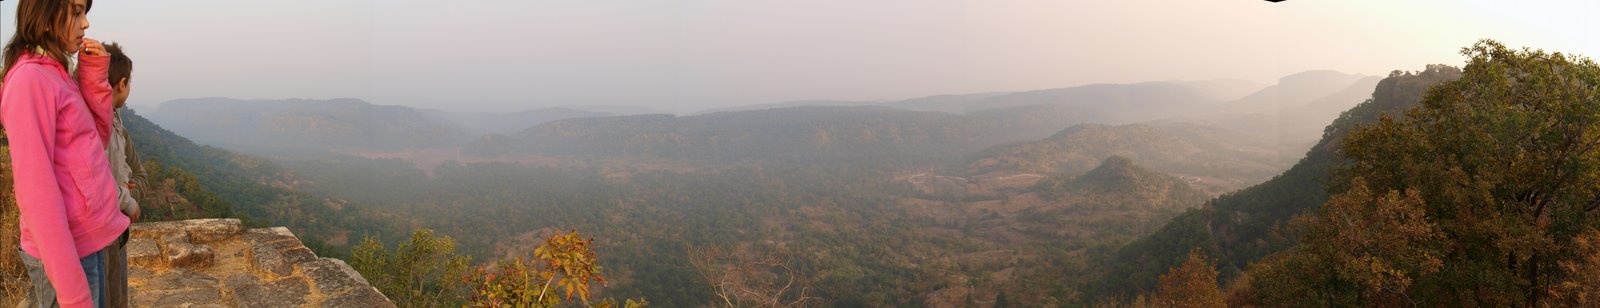 [Panorama_-_Bandhavgarh_fort.jpg]